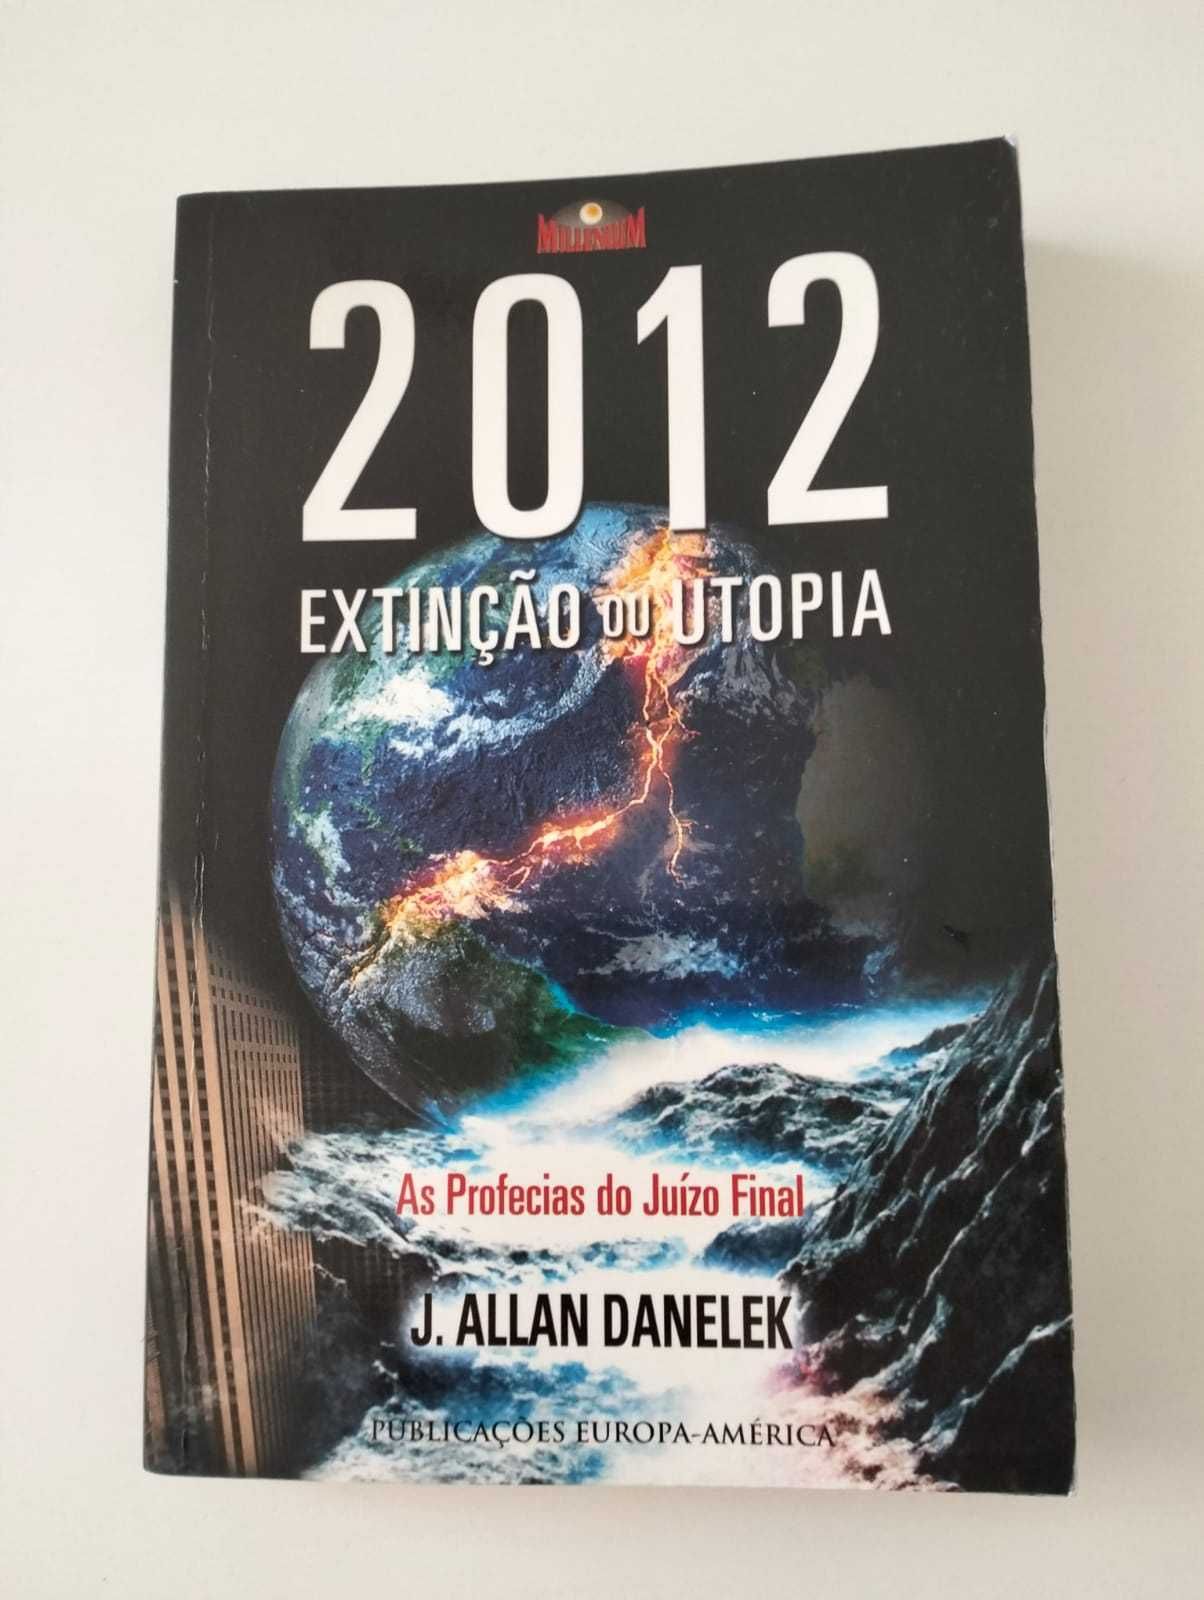 Livro "2012 Extinção ou Utopia" - J. Allan Danelek